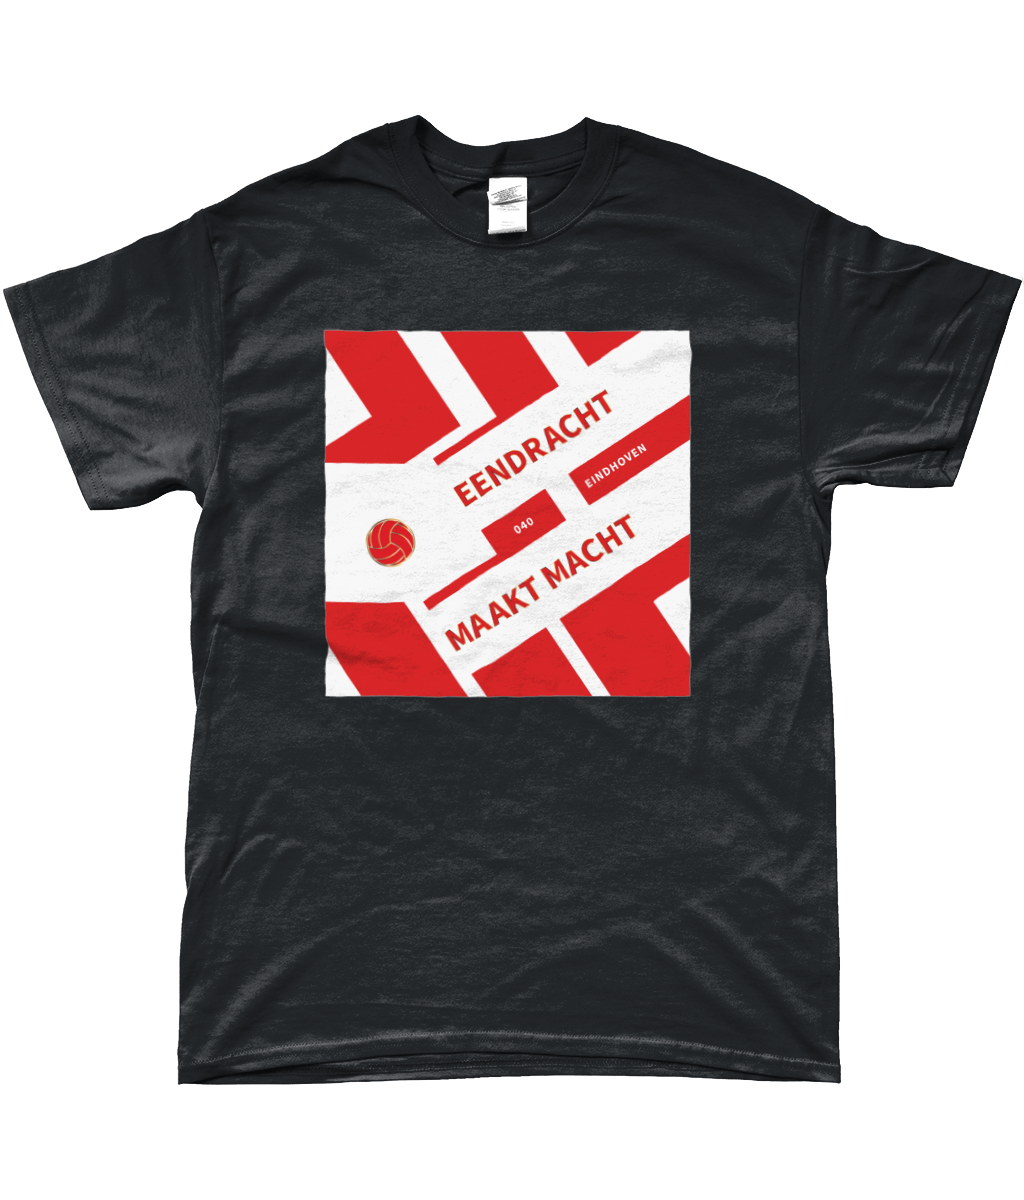 PSV - Eendracht Maakt Macht 1 T-shirt